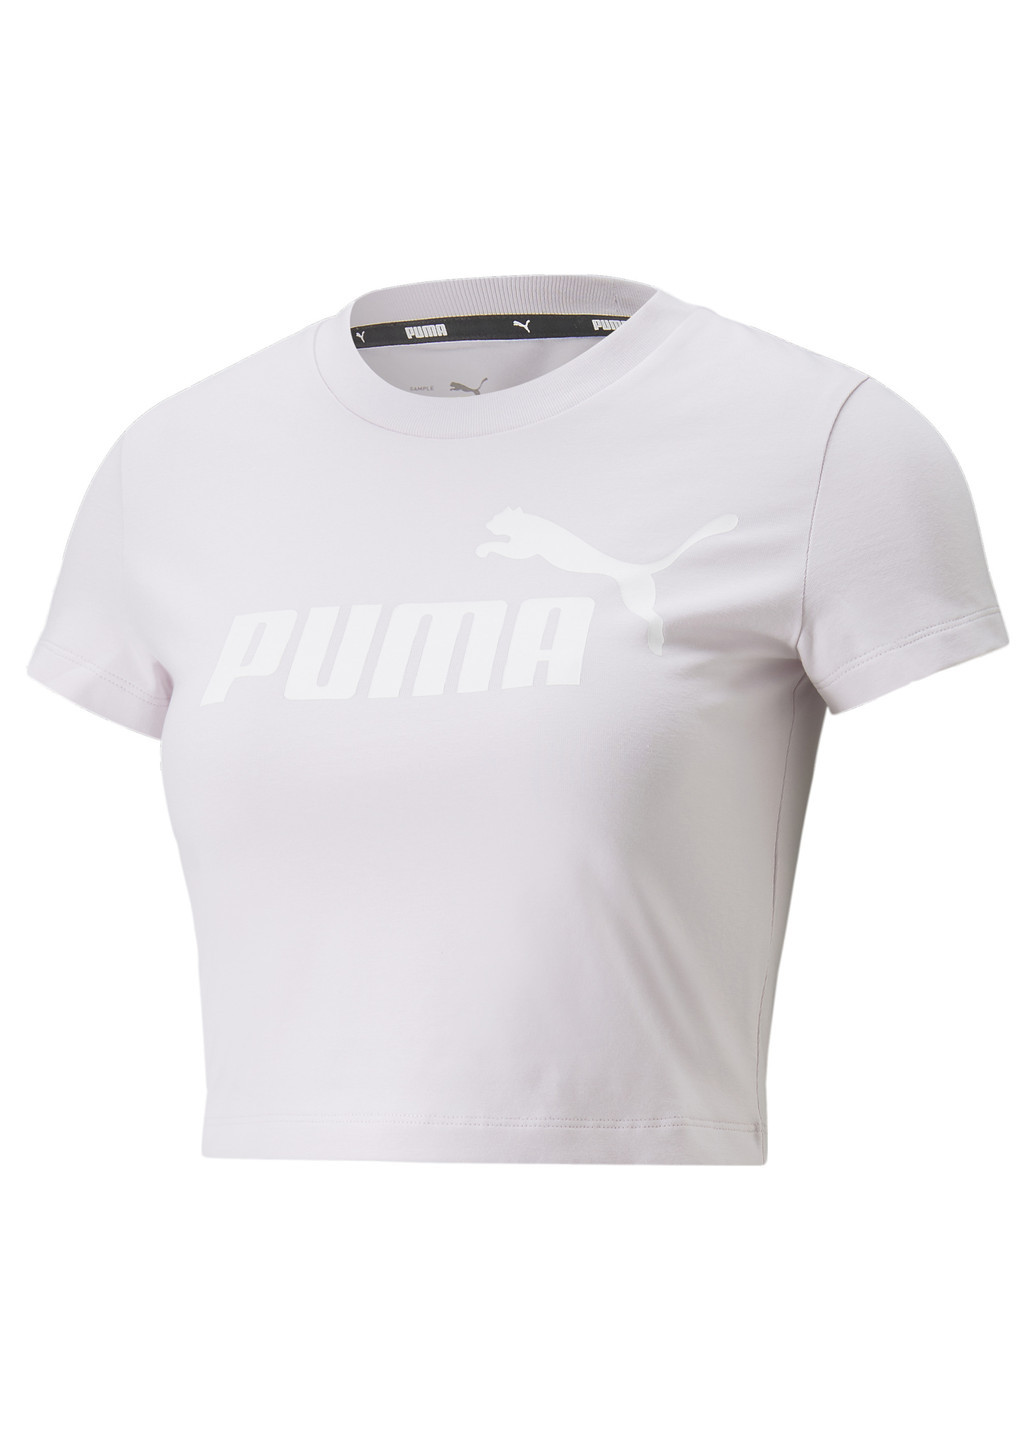 Футболка Essentials Slim Logo Women's Tee Puma однотонная пурпурная спортивная хлопок, полиэстер, эластан